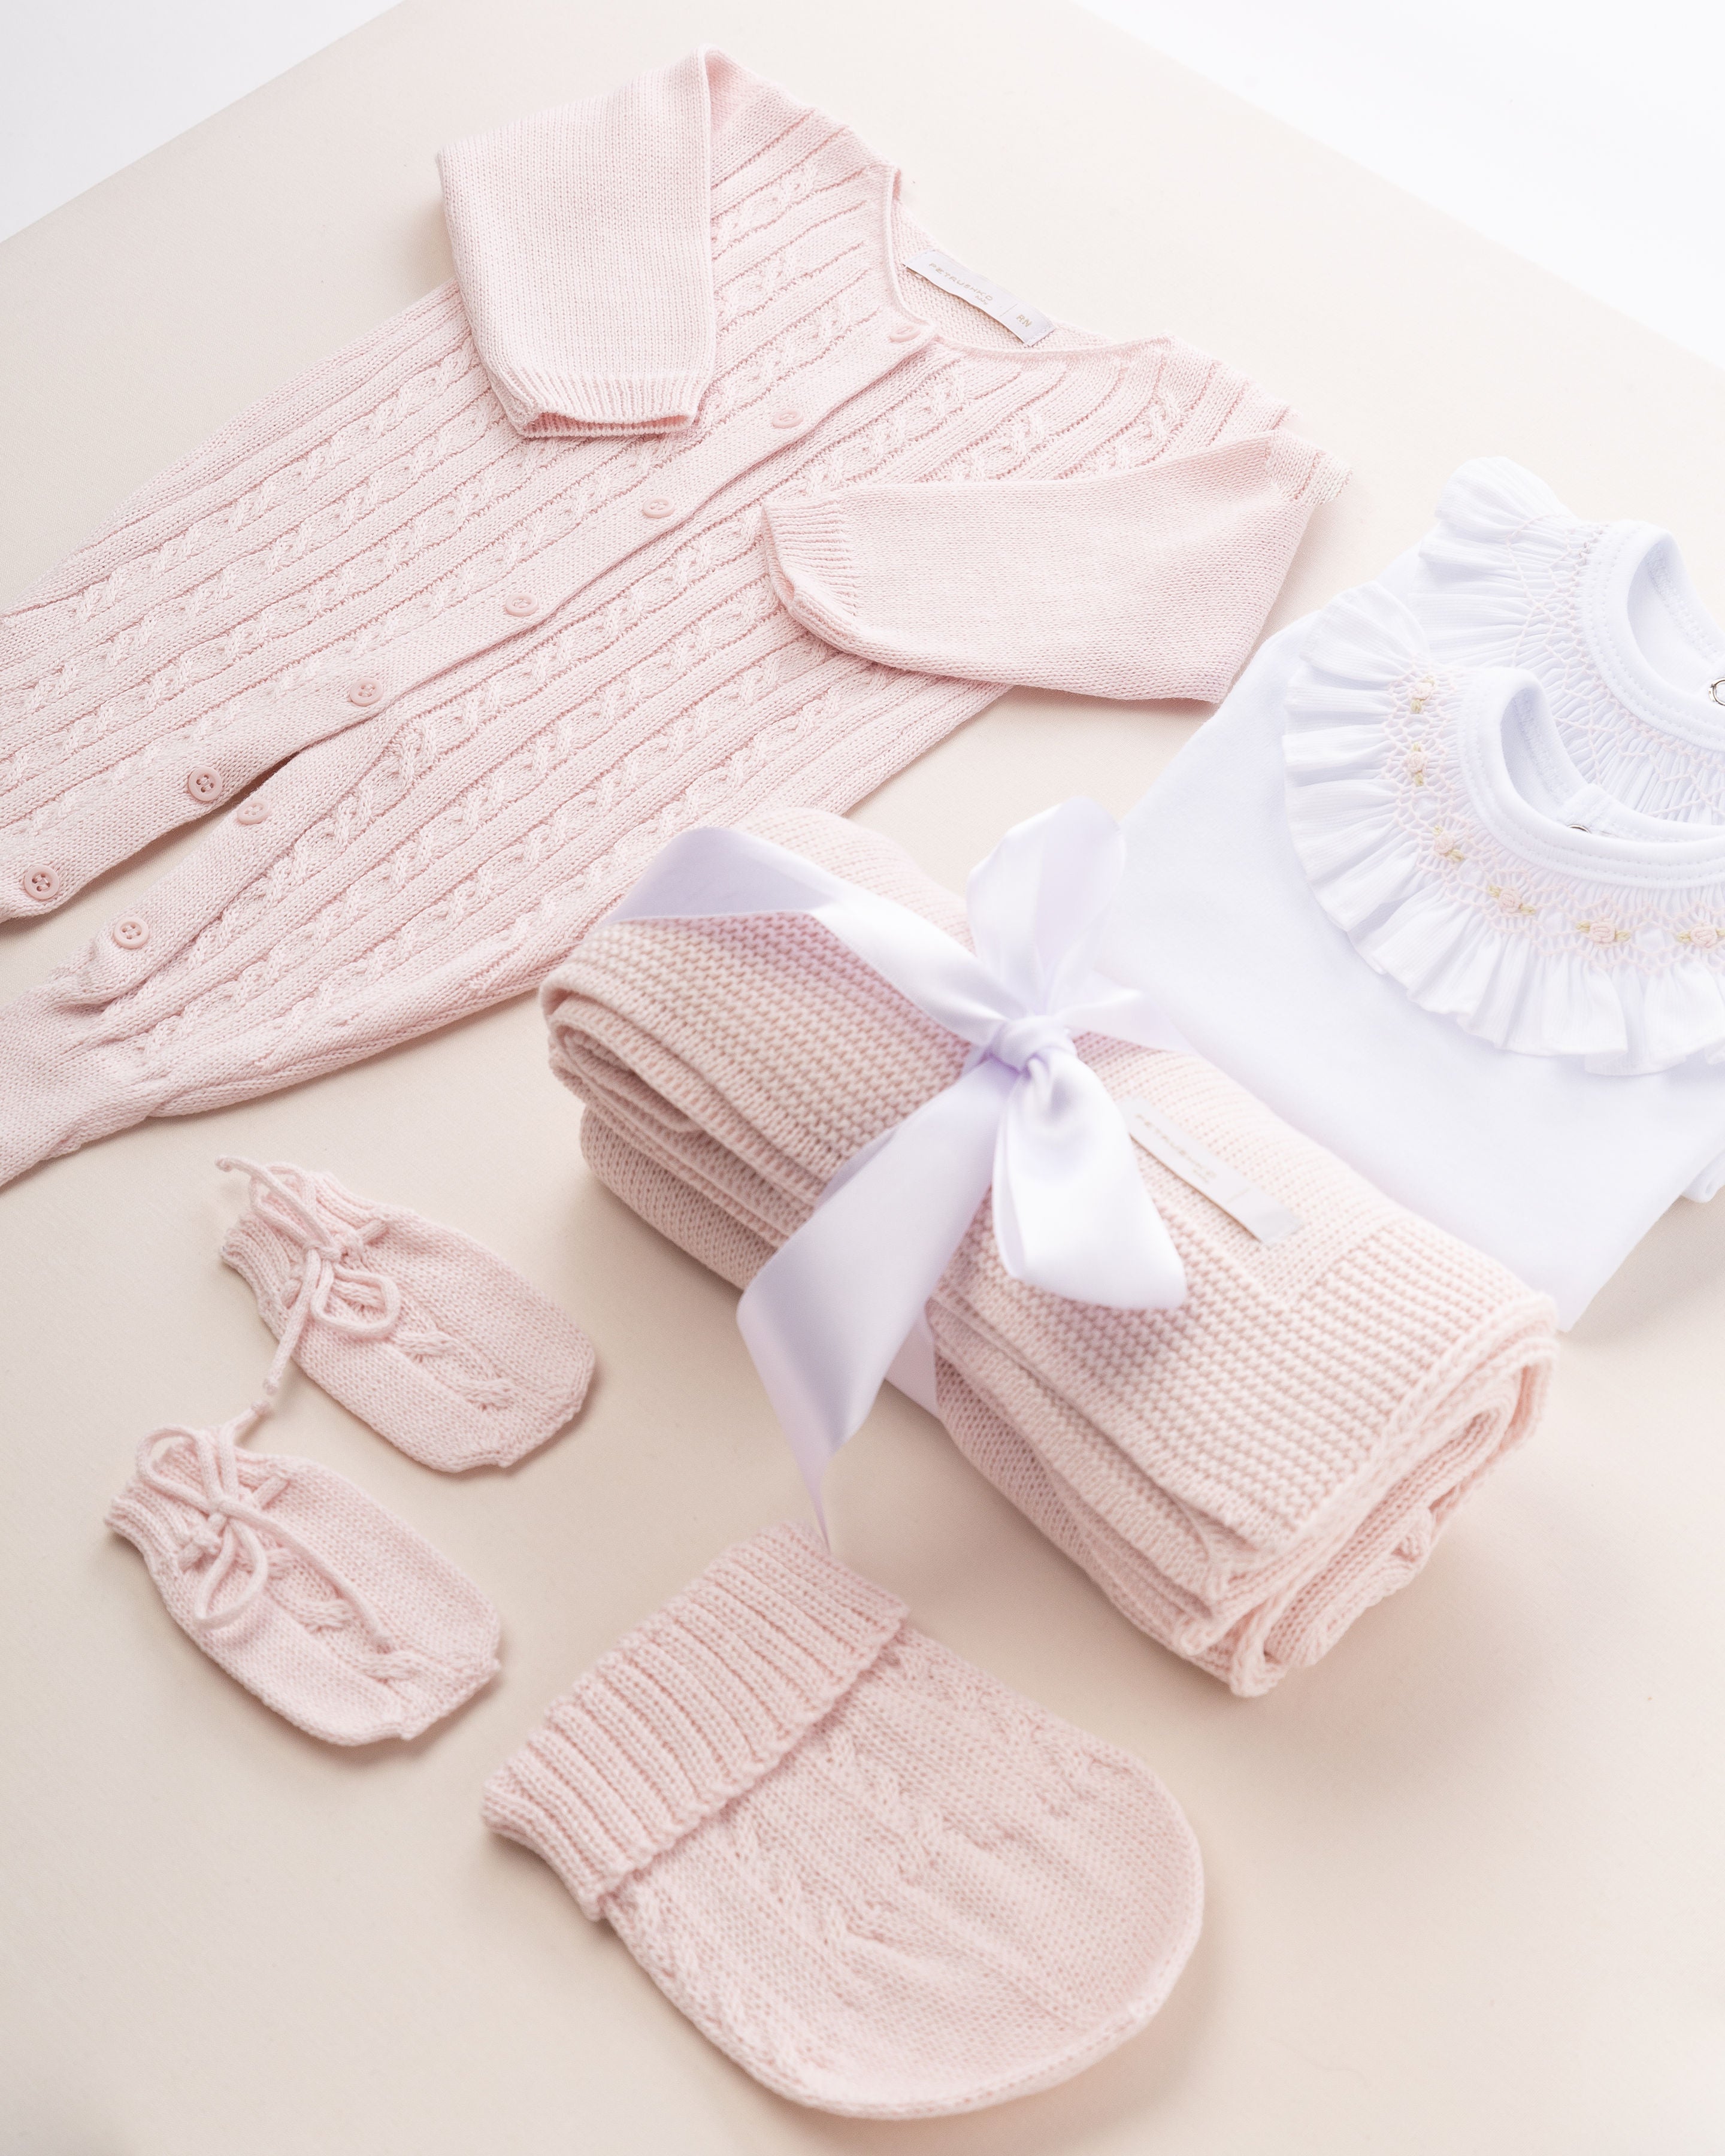 Nesta imagem, é possível explorar outros ângulos do kit de saída de maternidade. A tonalidade rosa é um clássico que traz harmonia e suavidade para o visual da bebê.